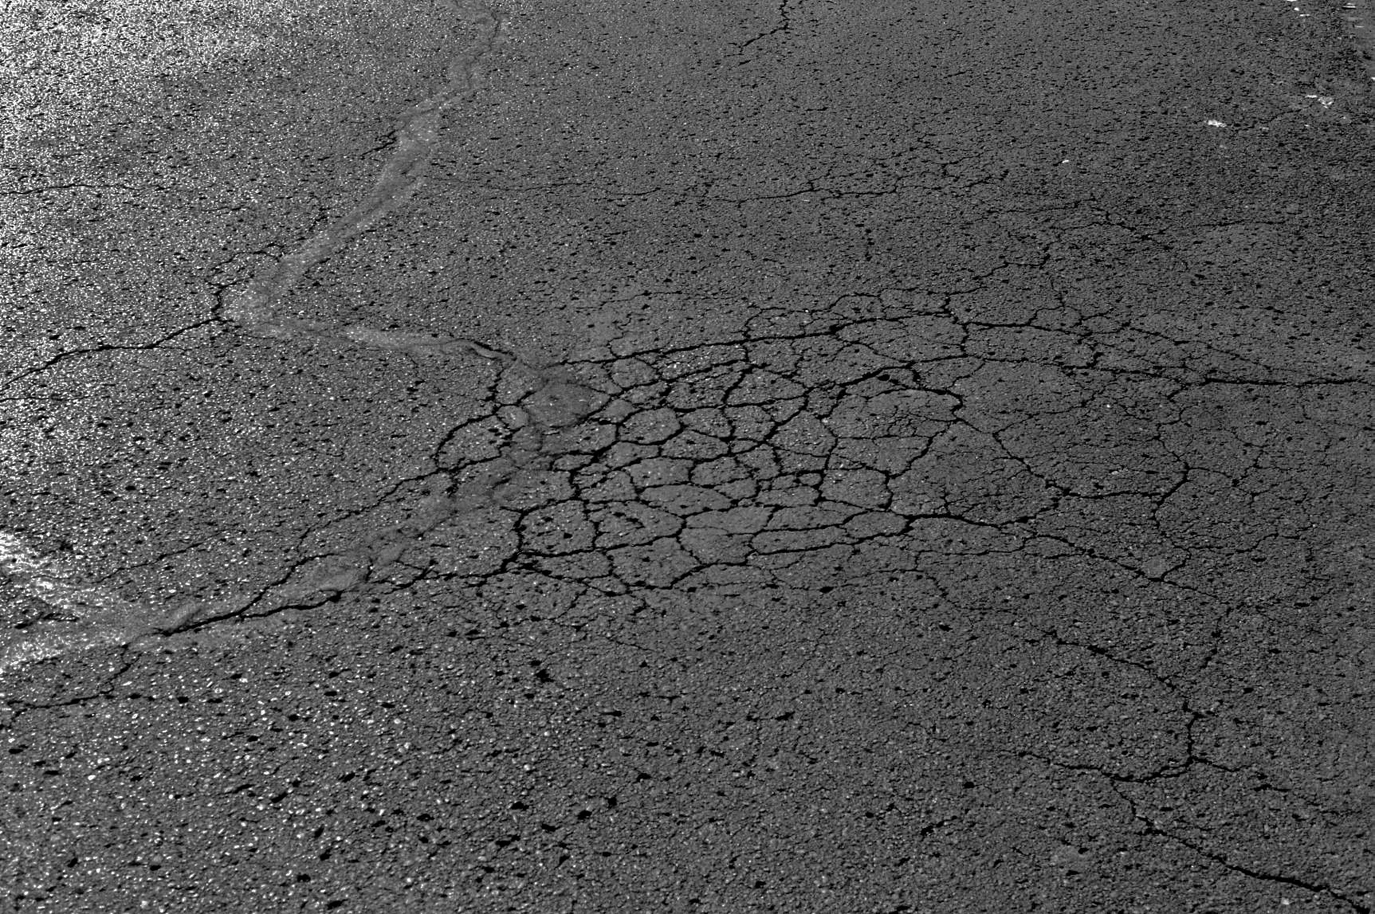 cracking asphalt pictures image